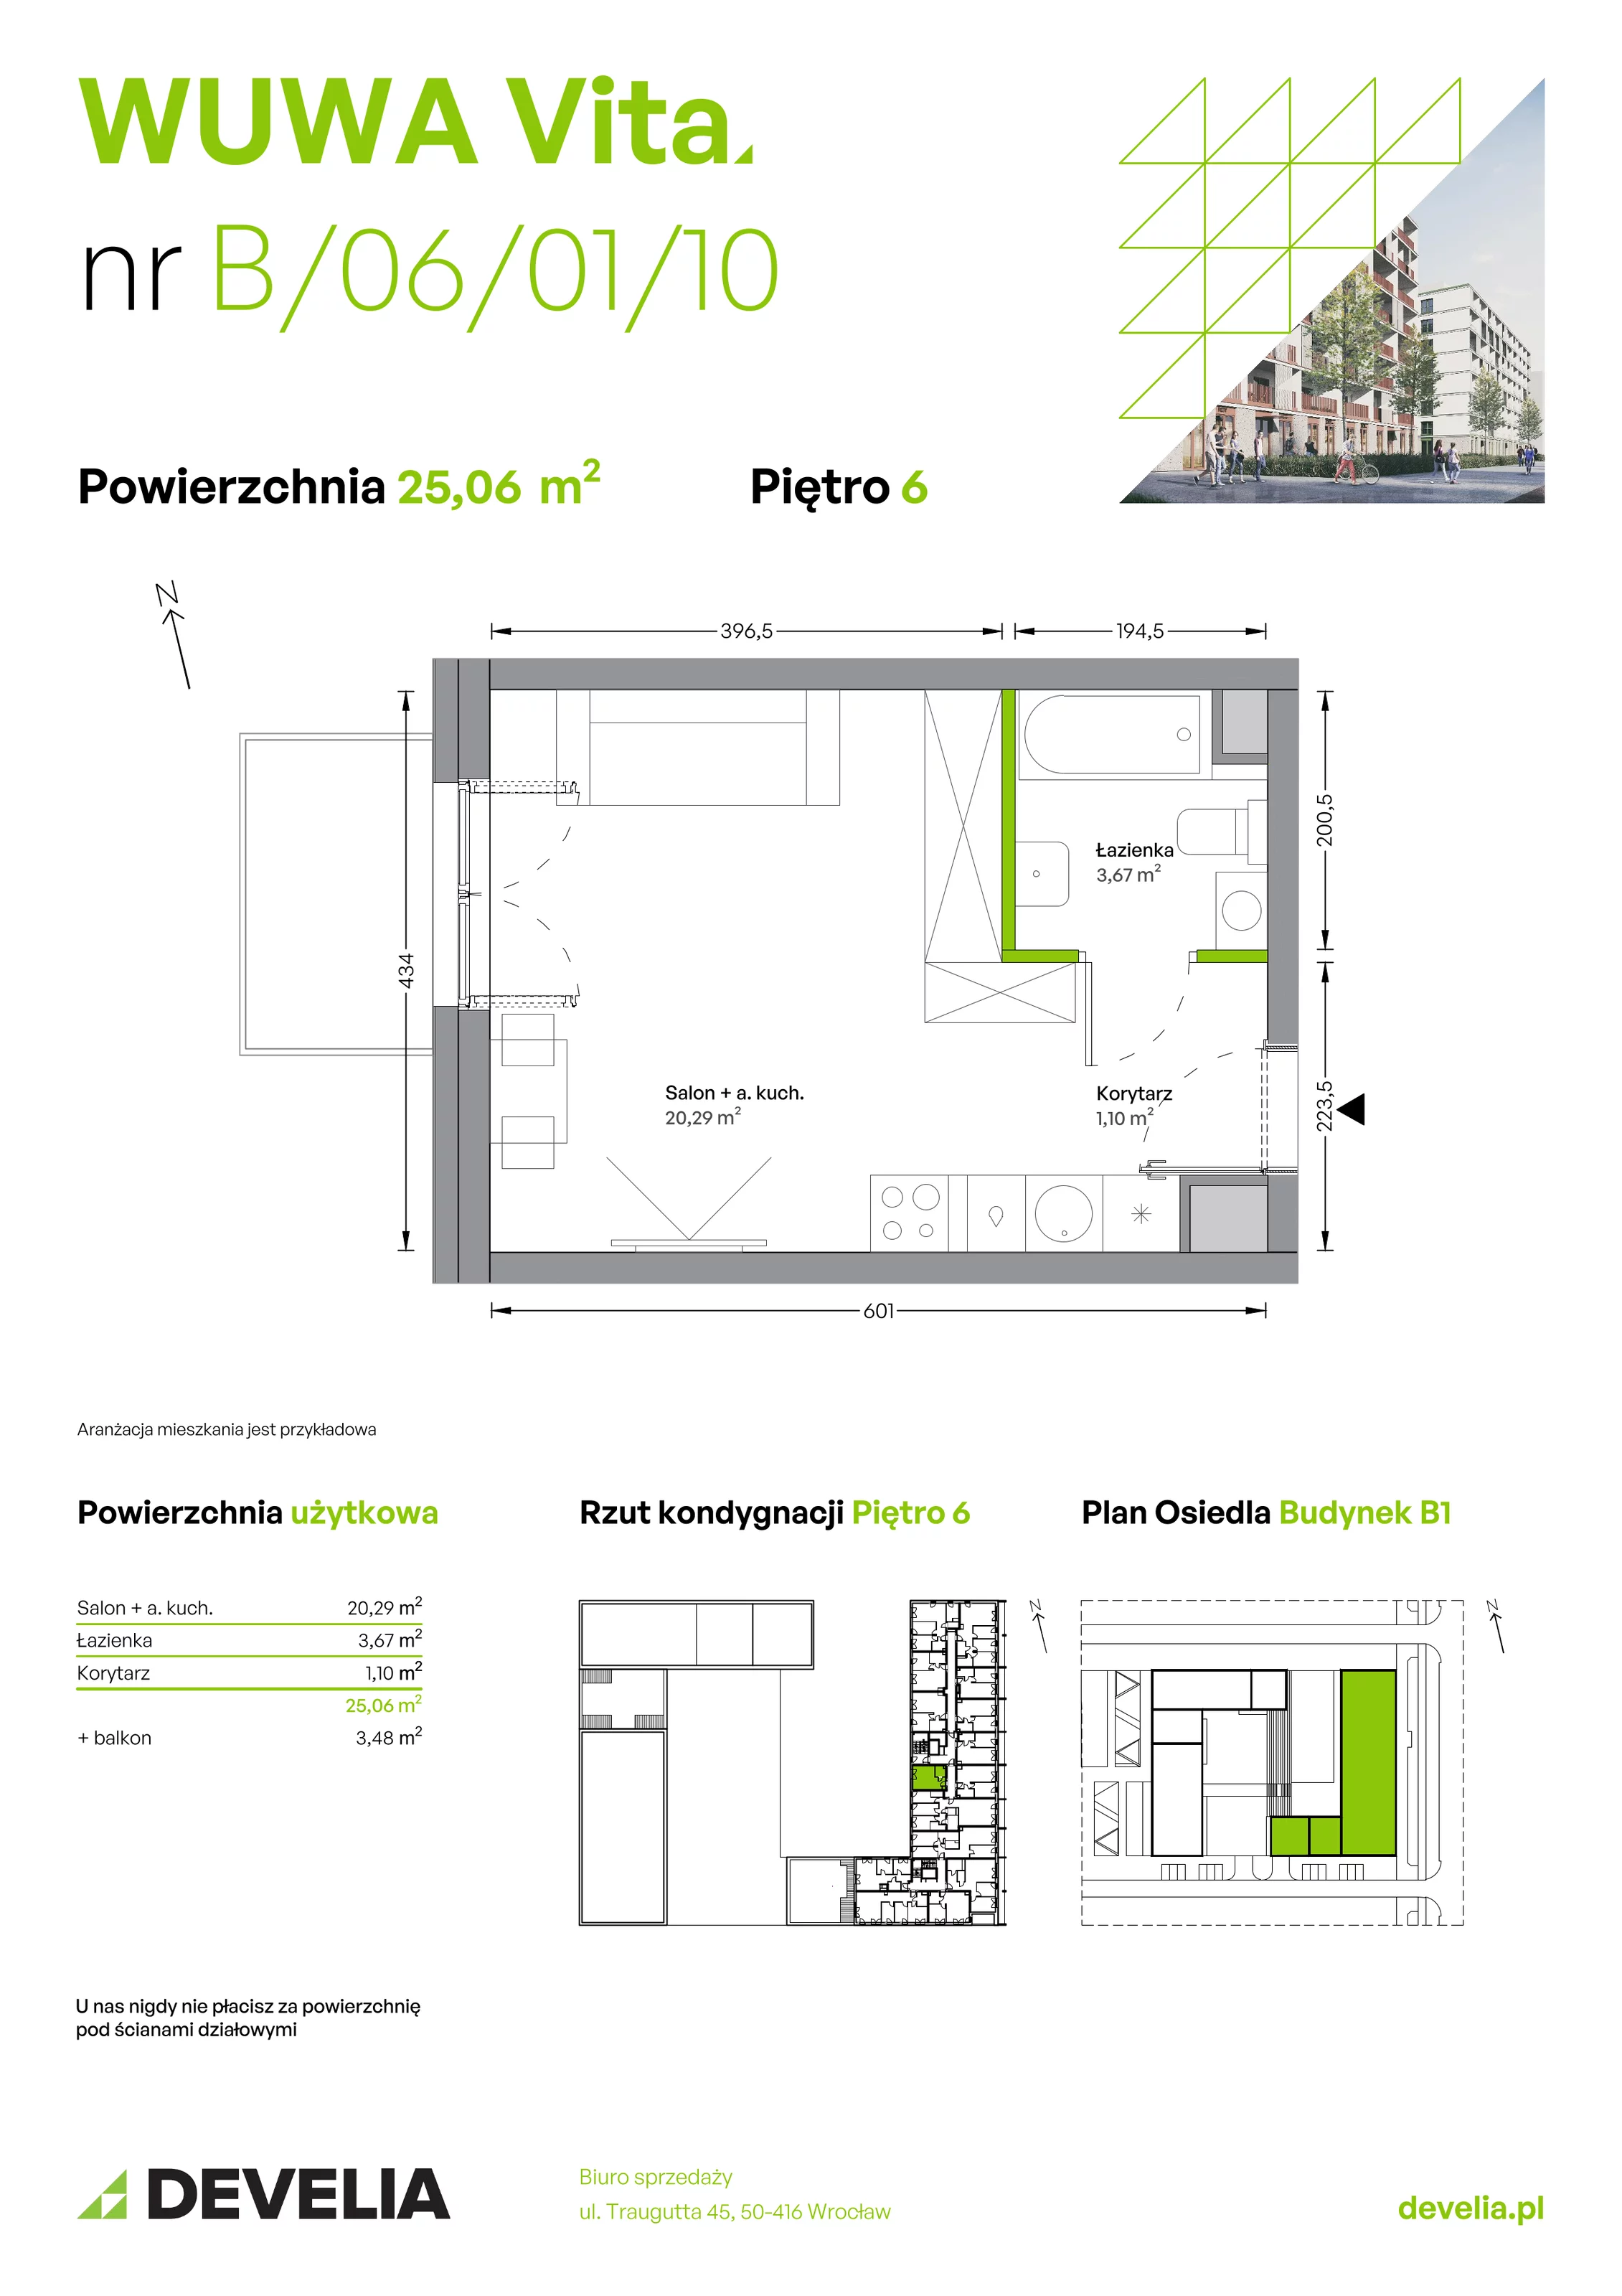 Mieszkanie 25,06 m², piętro 6, oferta nr B.06.01.10, WUWA Vita, Wrocław, Żerniki, Fabryczna, ul. Tadeusza Brzozy